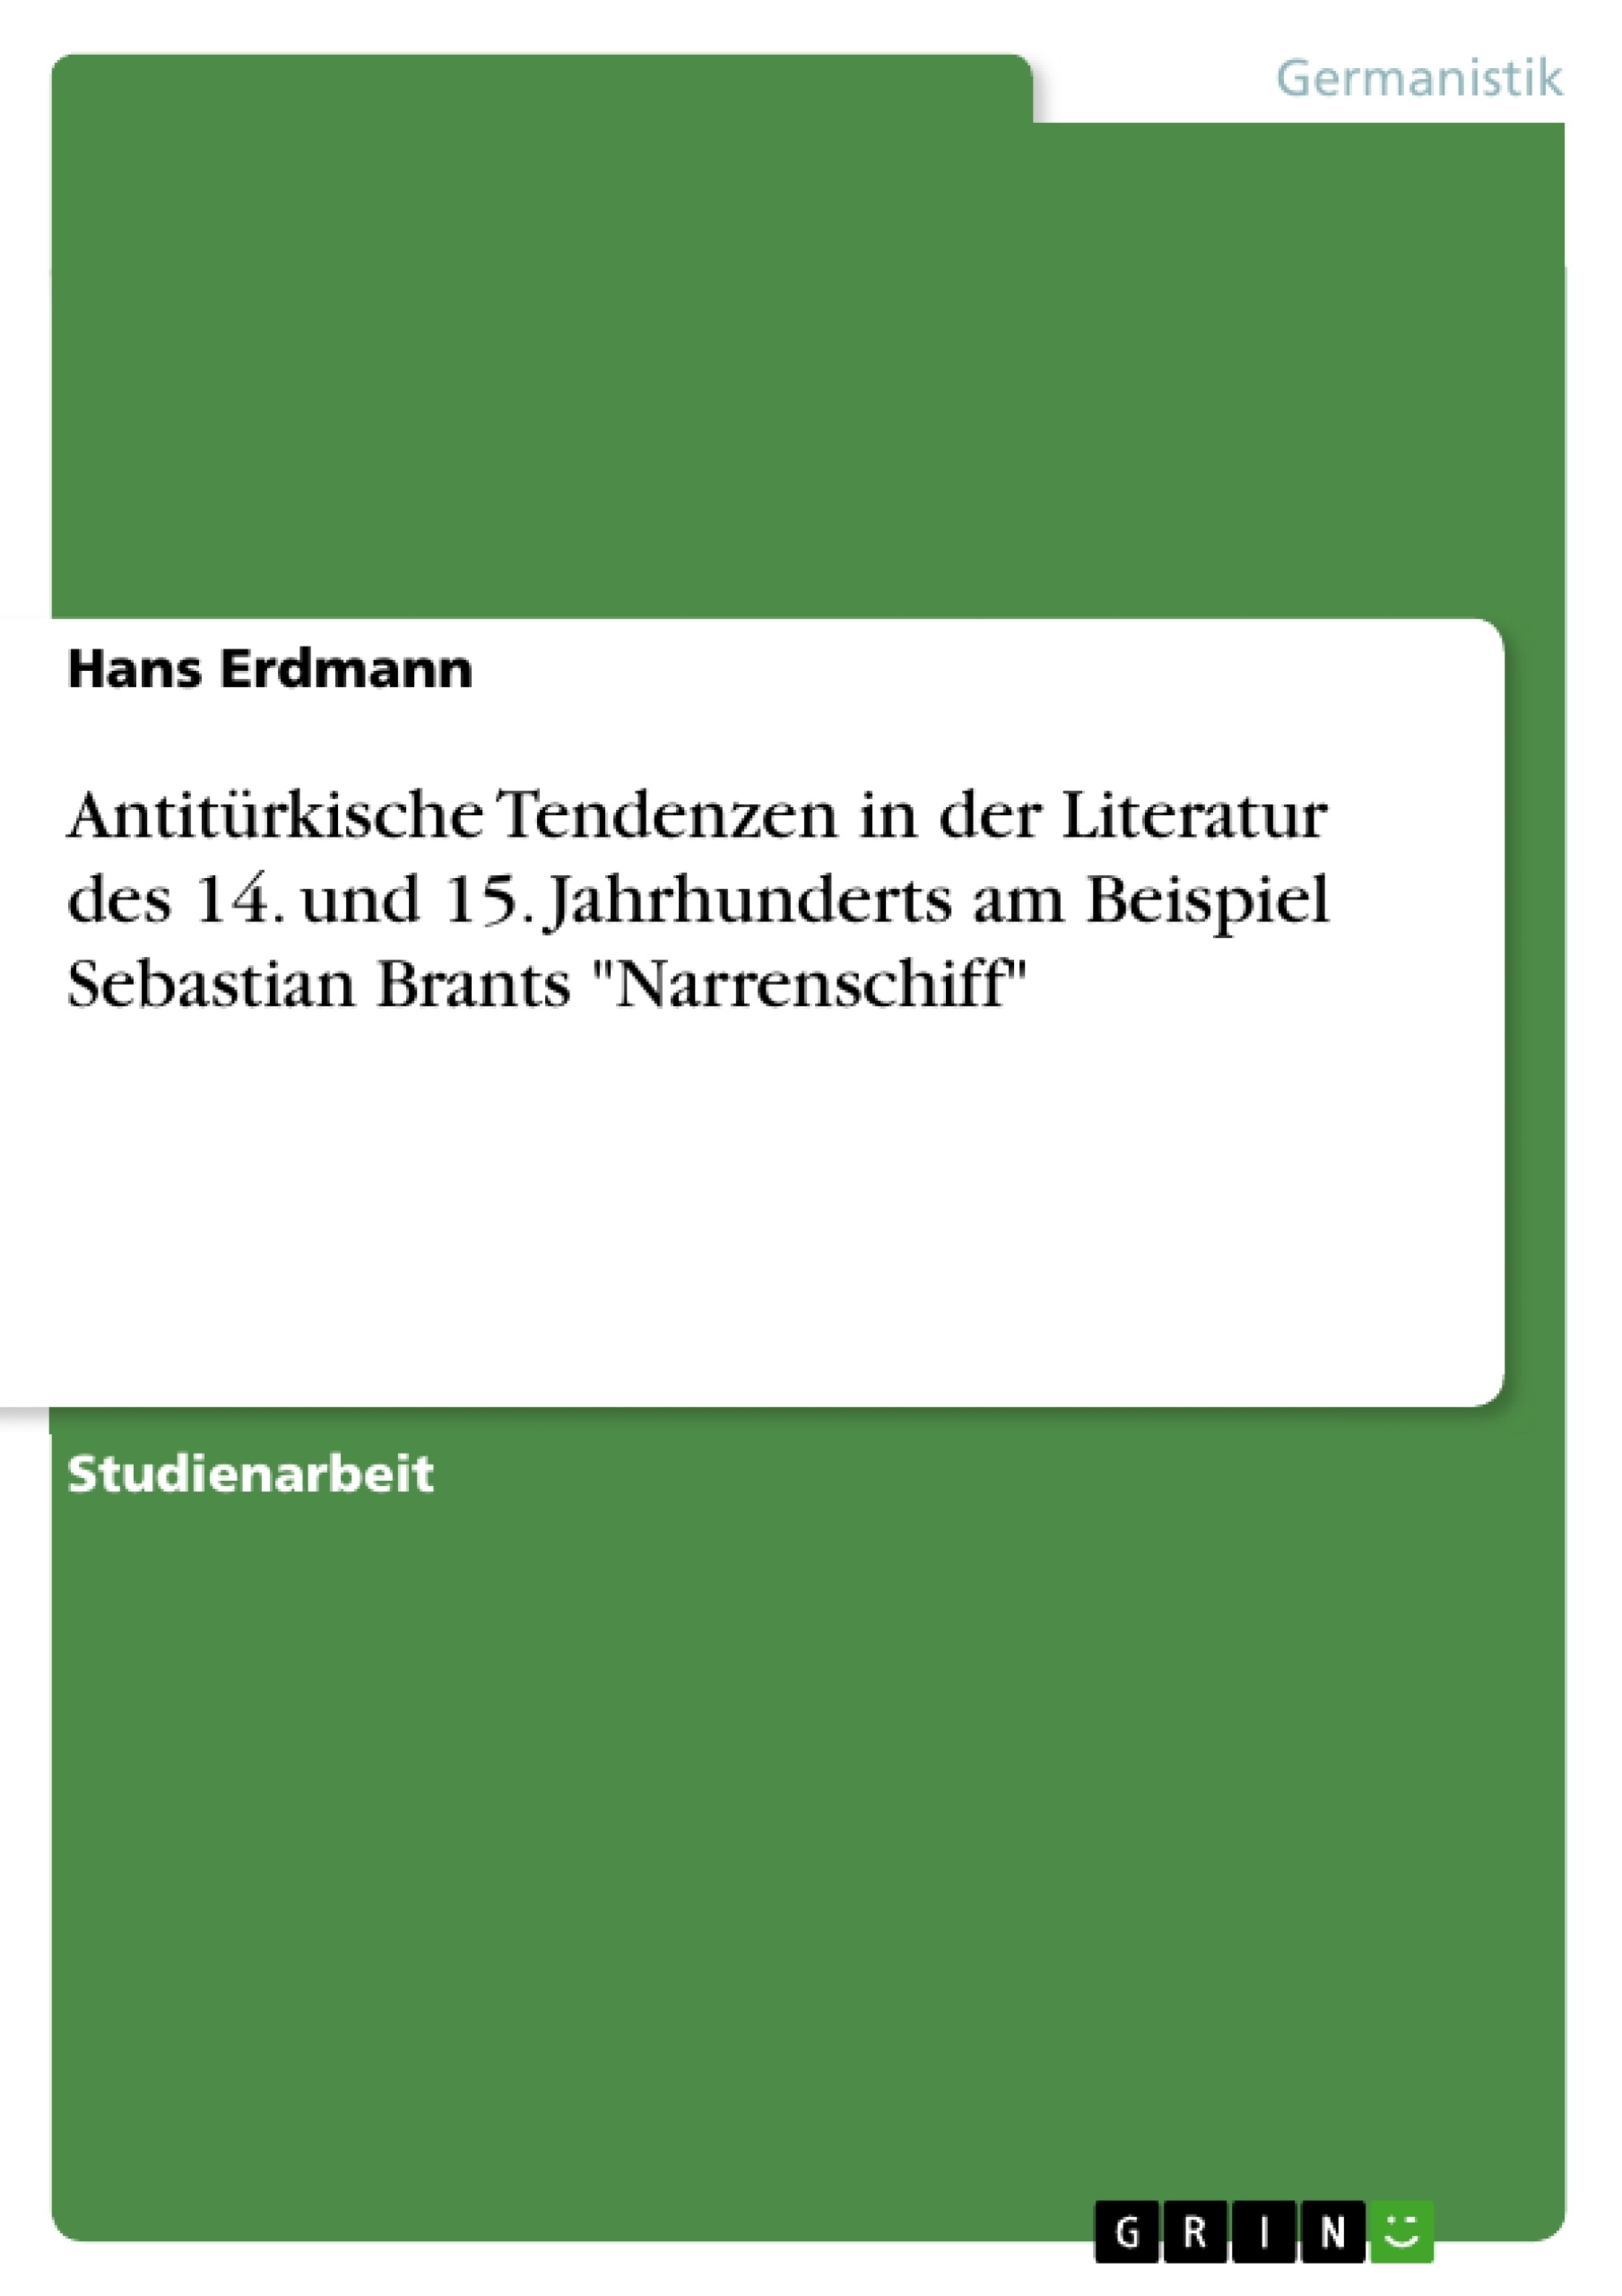 Title: Antitürkische Tendenzen in der Literatur des 14. und 15. Jahrhunderts am Beispiel Sebastian Brants "Narrenschiff"